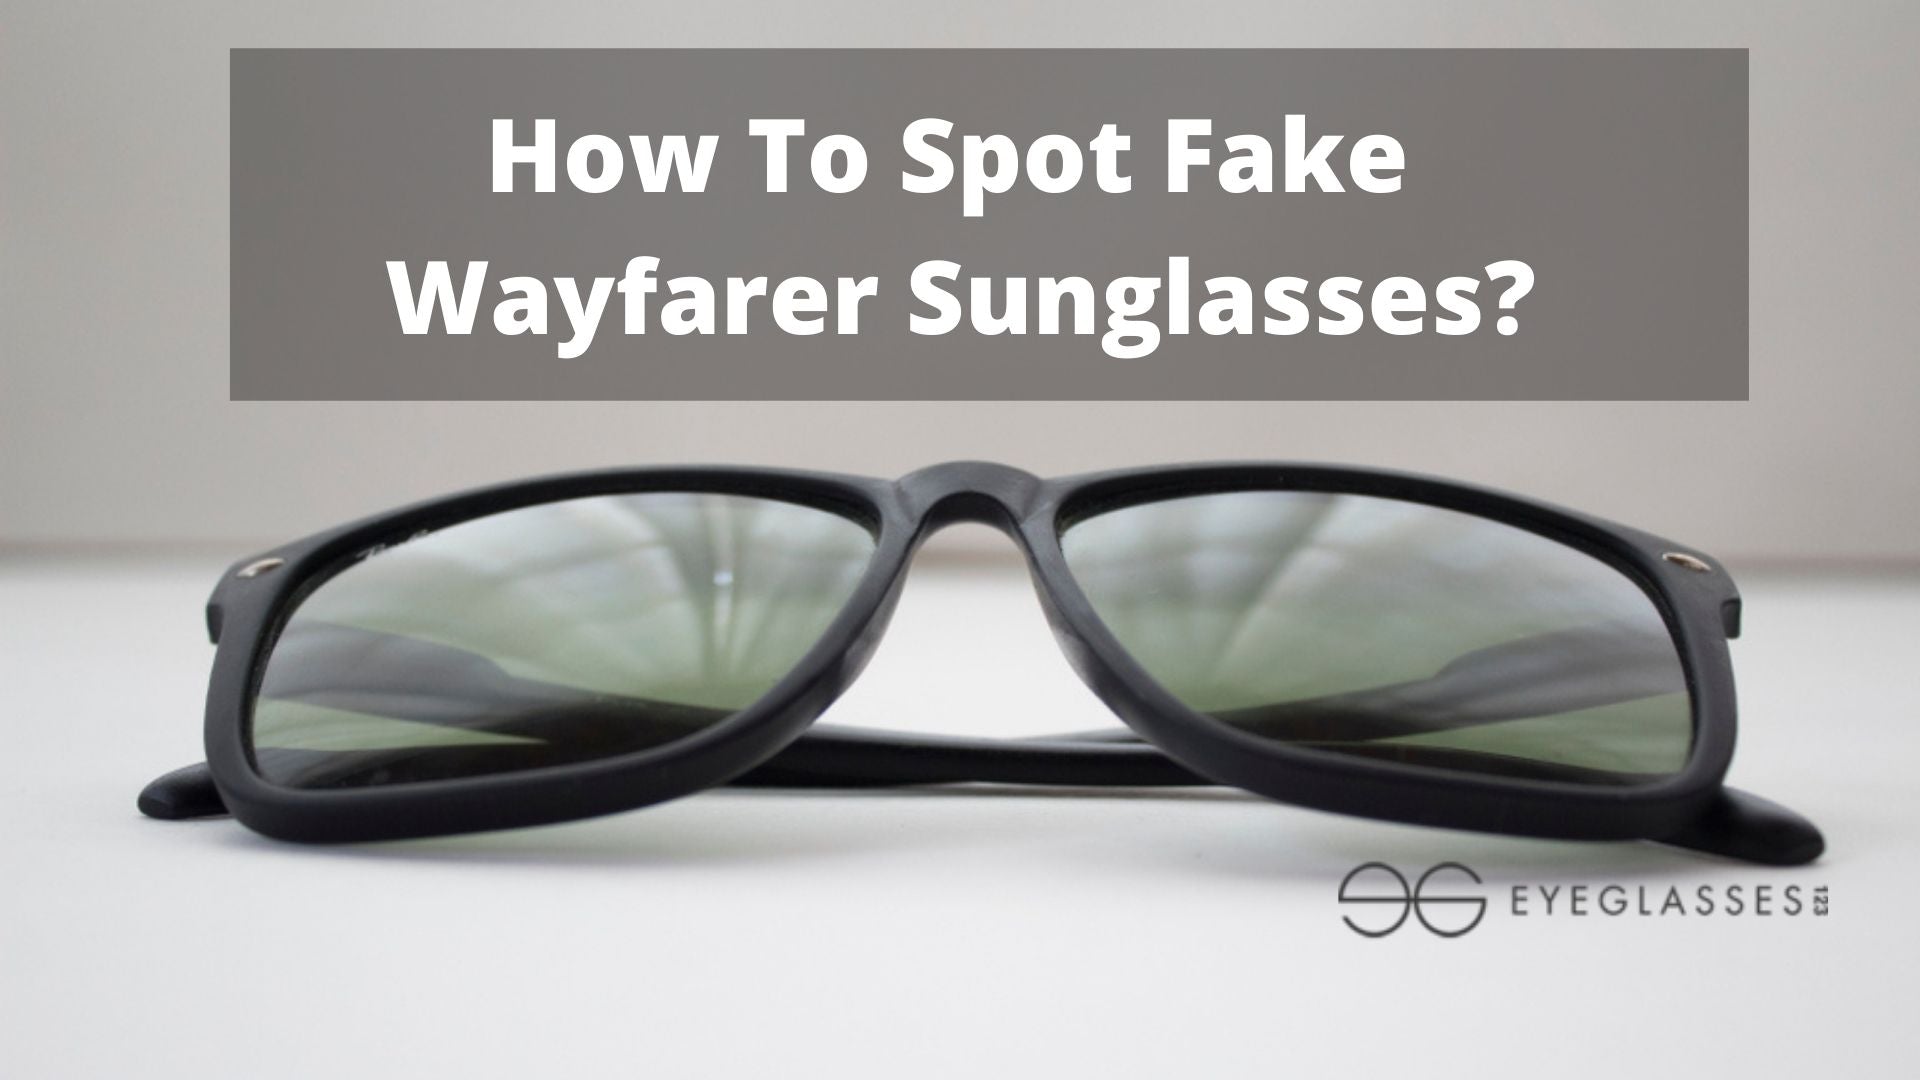 How To Spot Fake Wayfarer Sunglasses?